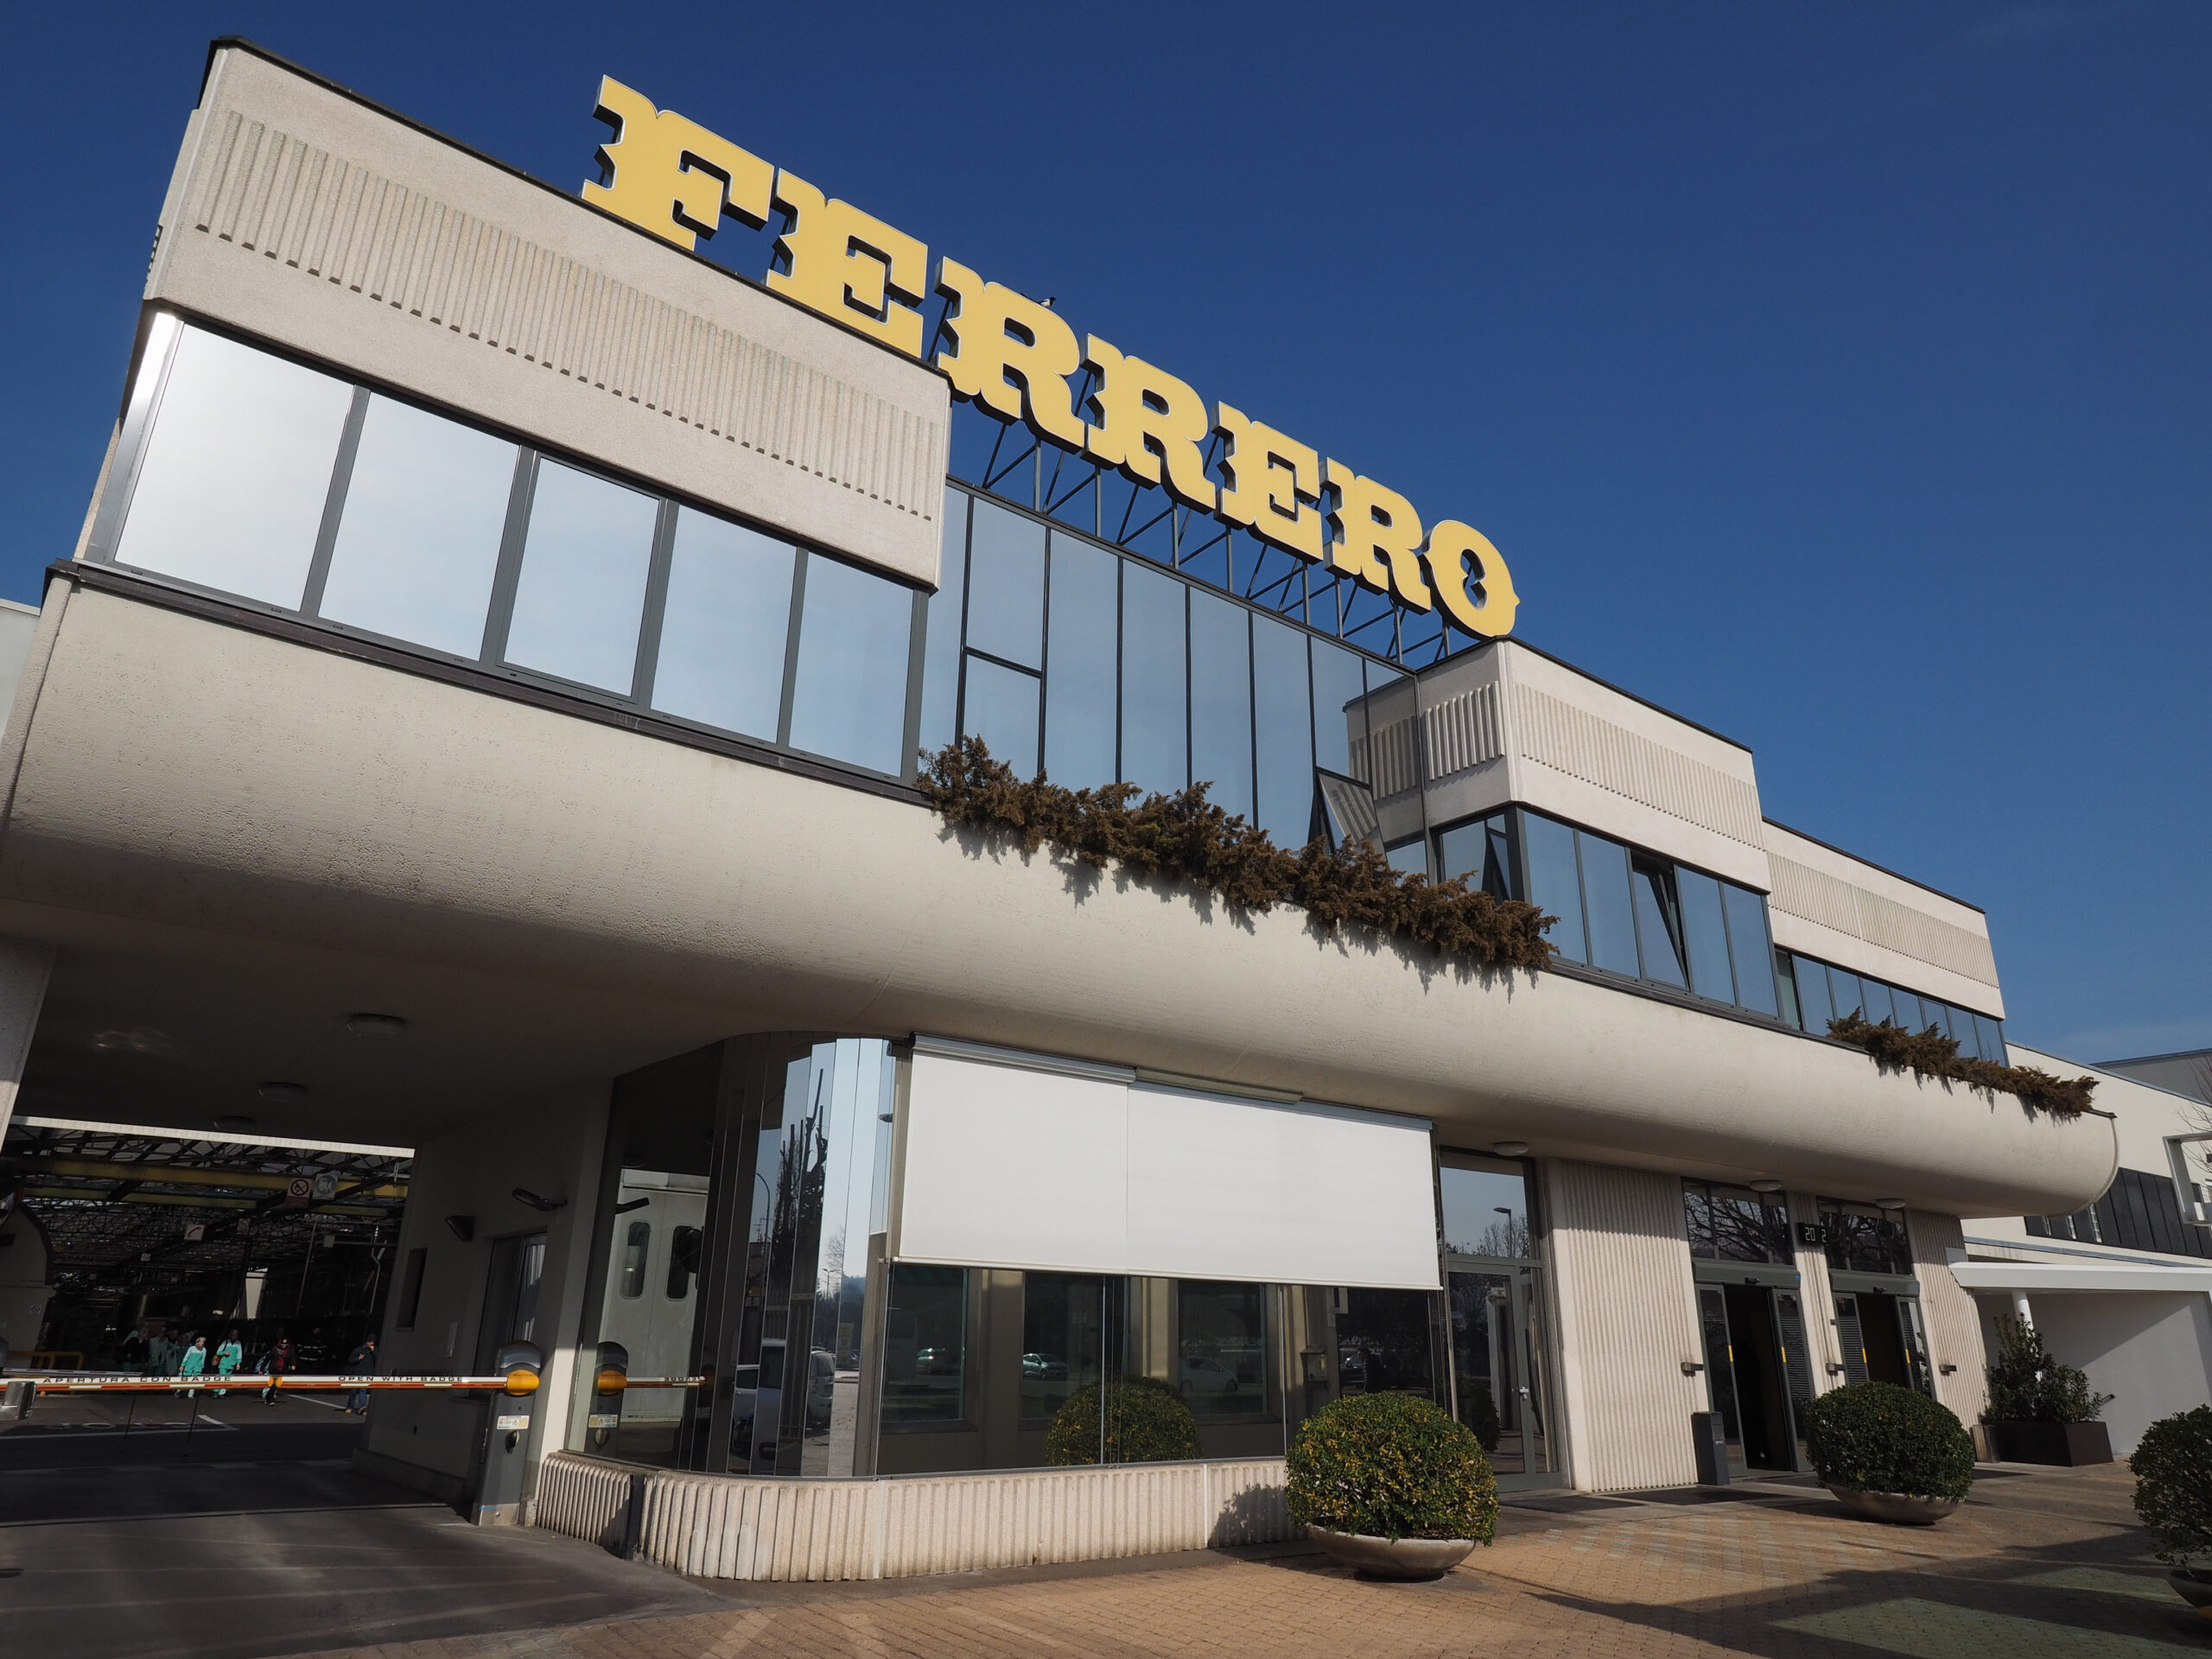 Ferrero assume in questa regione: profili richiesti e stipendi